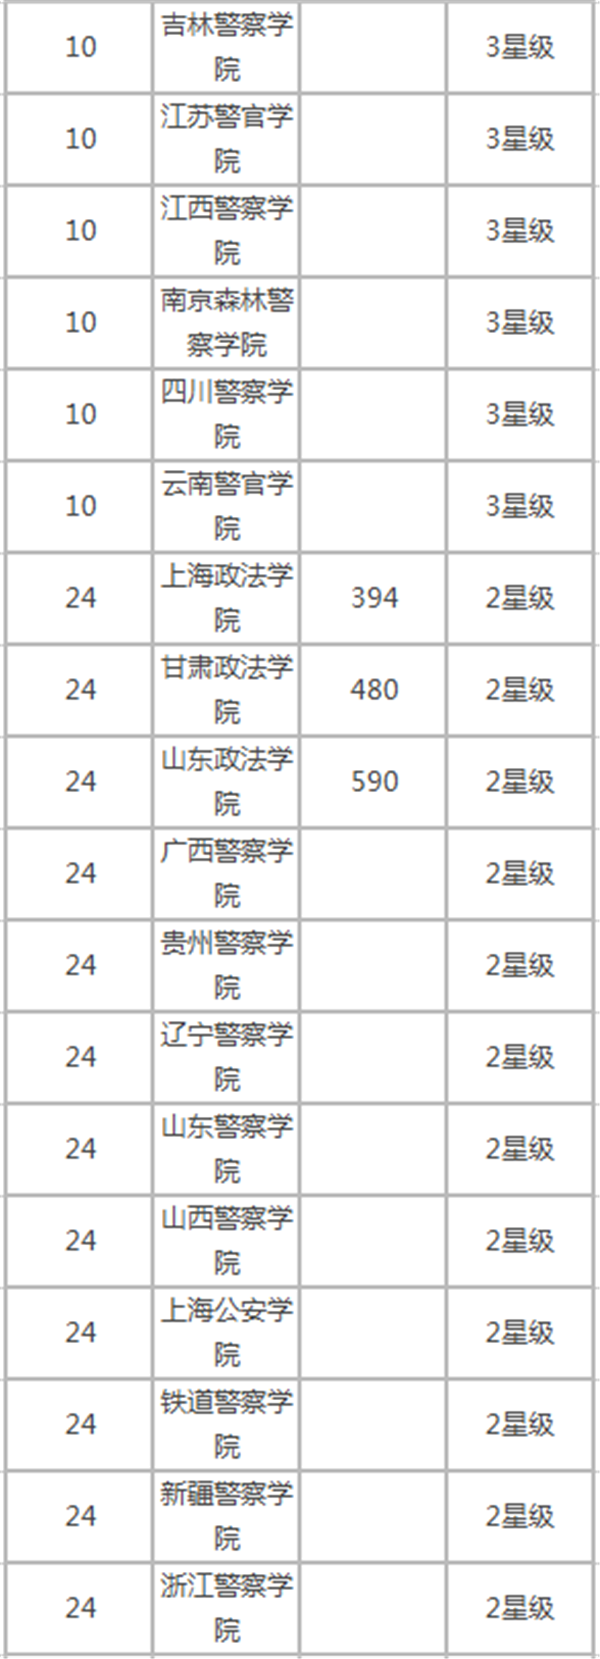 中国政法类大学排行榜